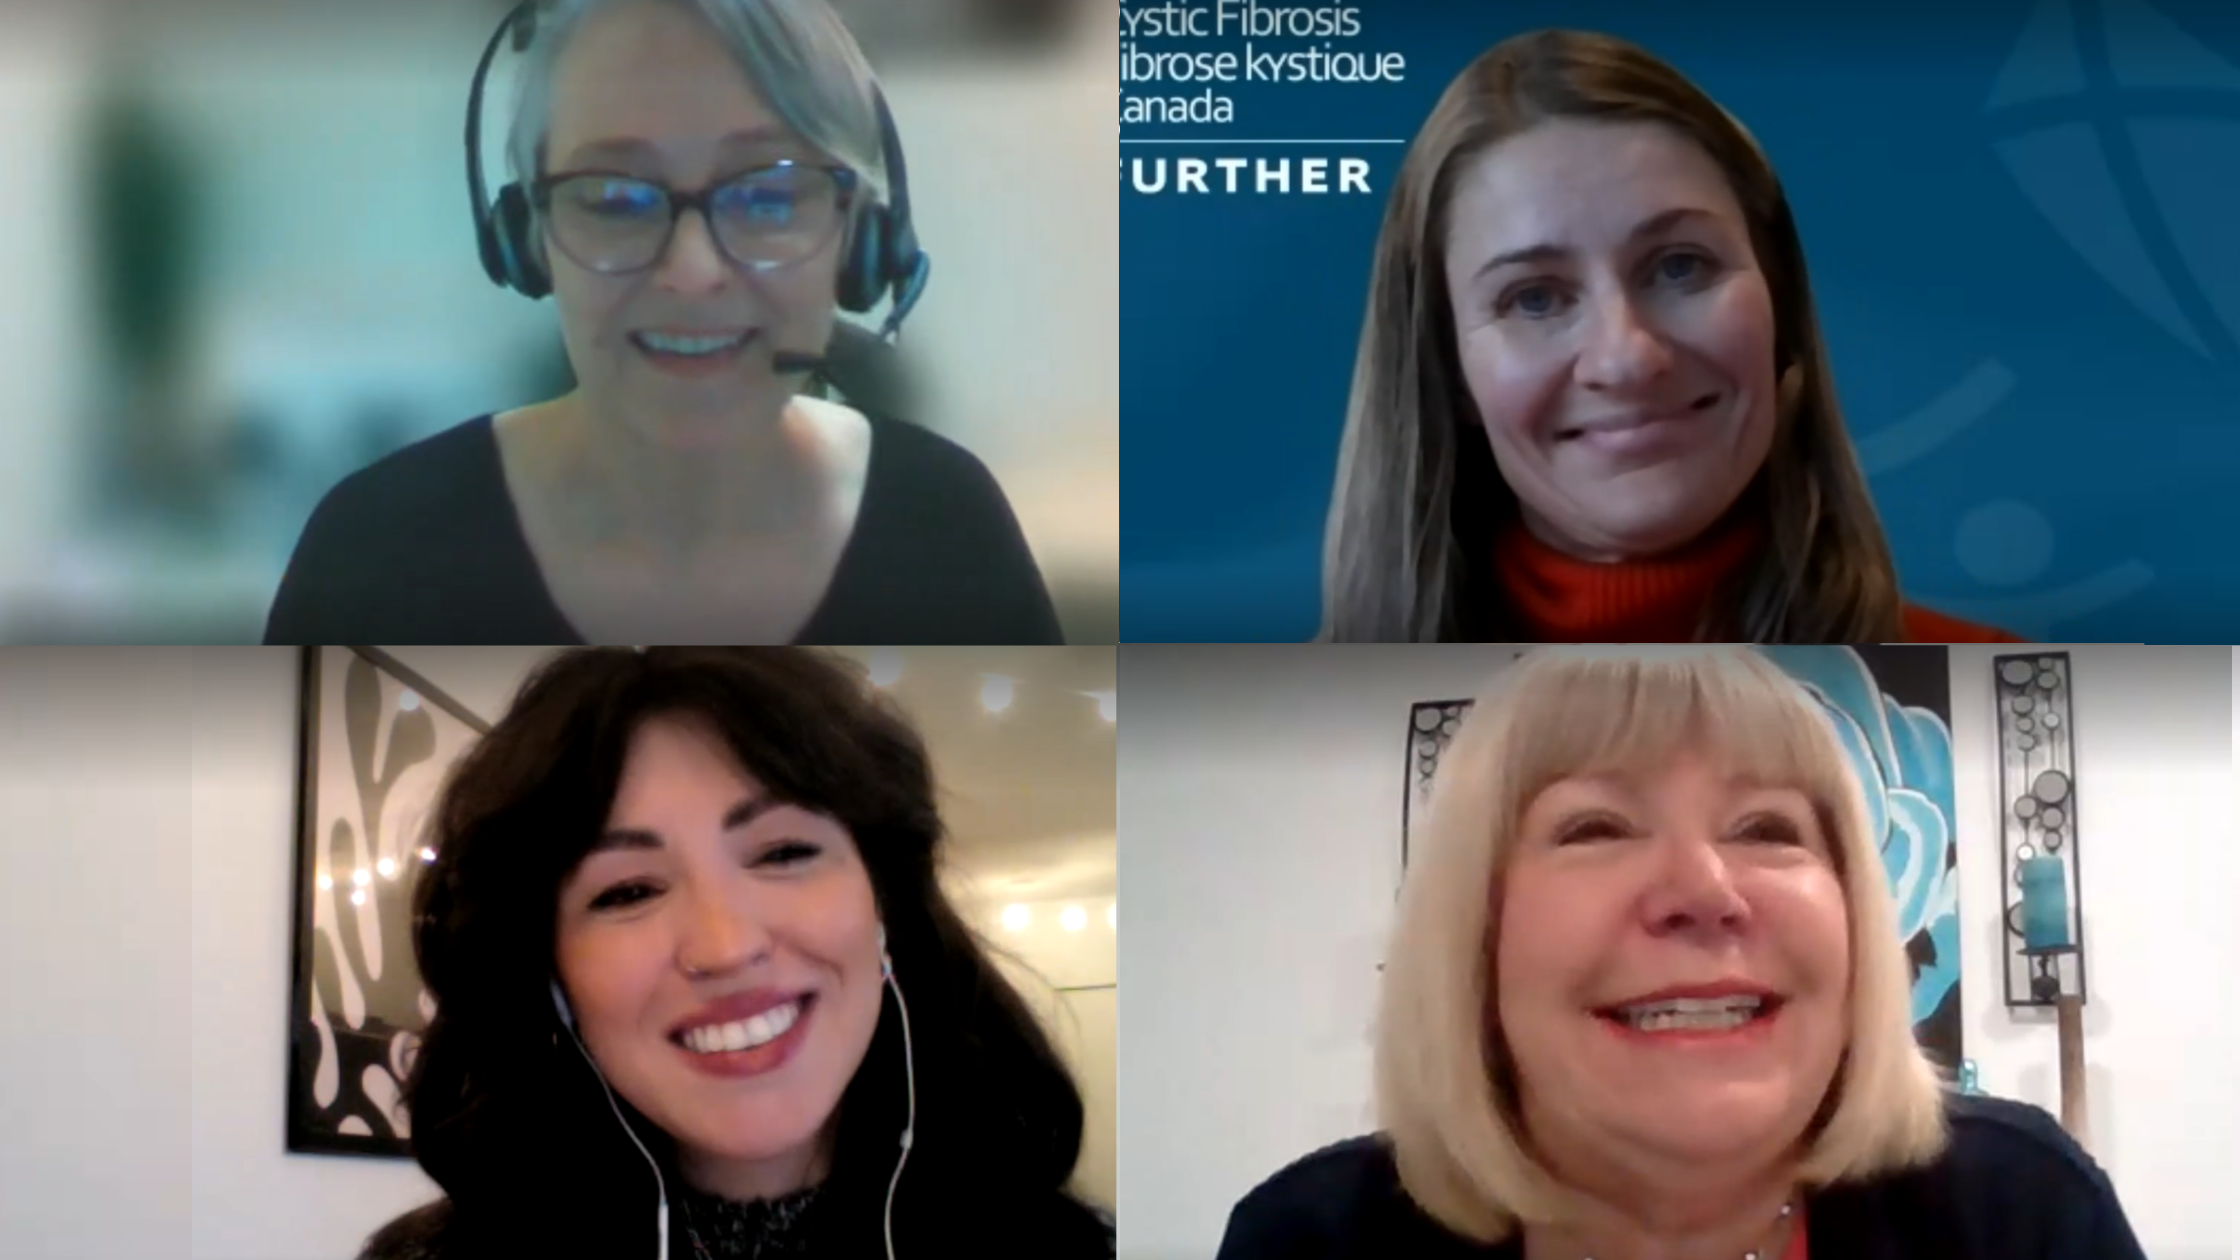 Pat MacDiarmid, Jana Kocourek, Trina Atchison et Marjorie Jorgenson sourient dans des captures d'écran pendant le webinaire sur la santé mentale et la fibrose kystique.